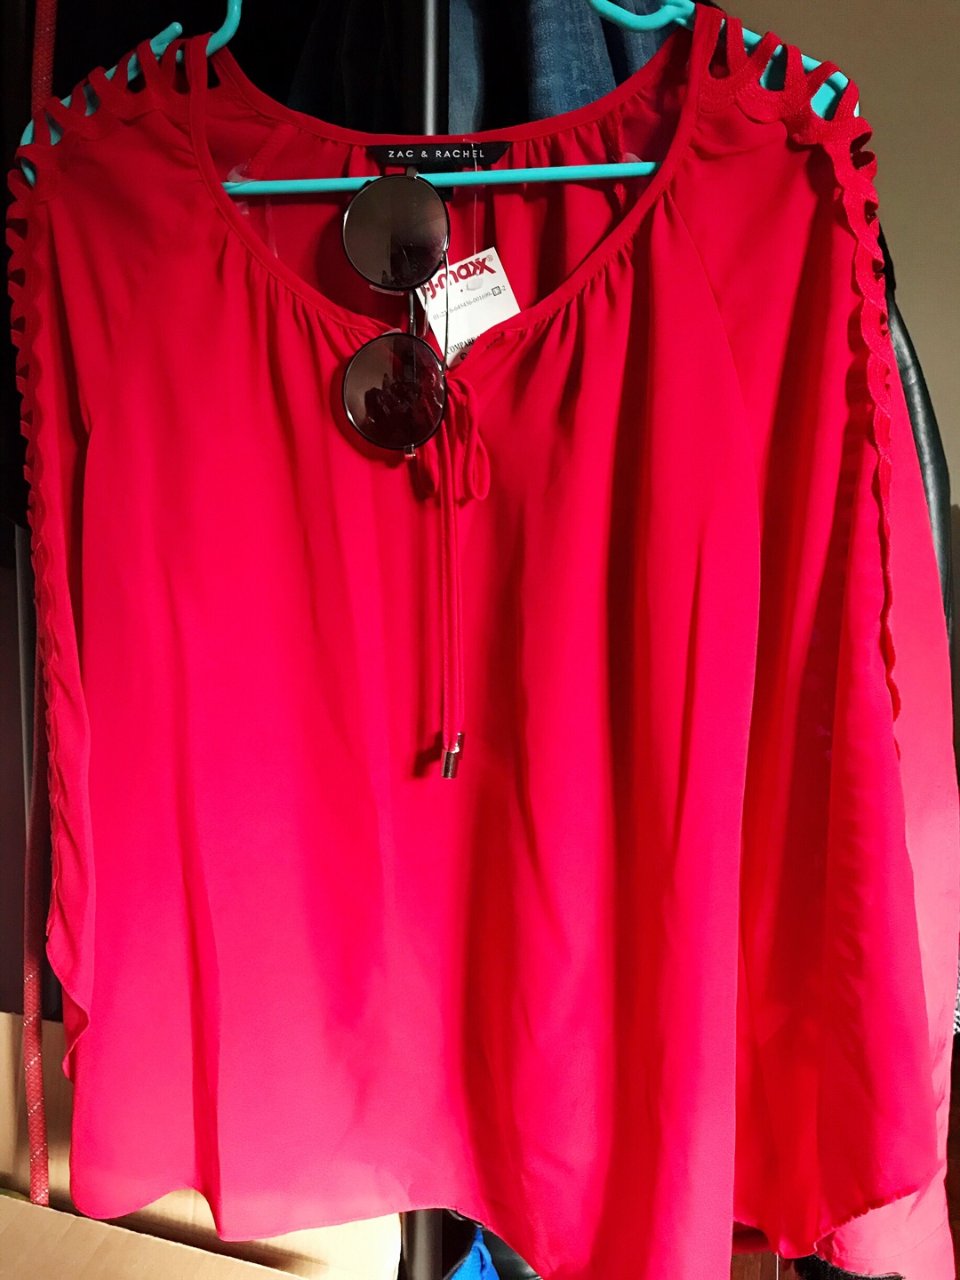 新年穿新衣,开年大红色,Prada 墨镜,12美元